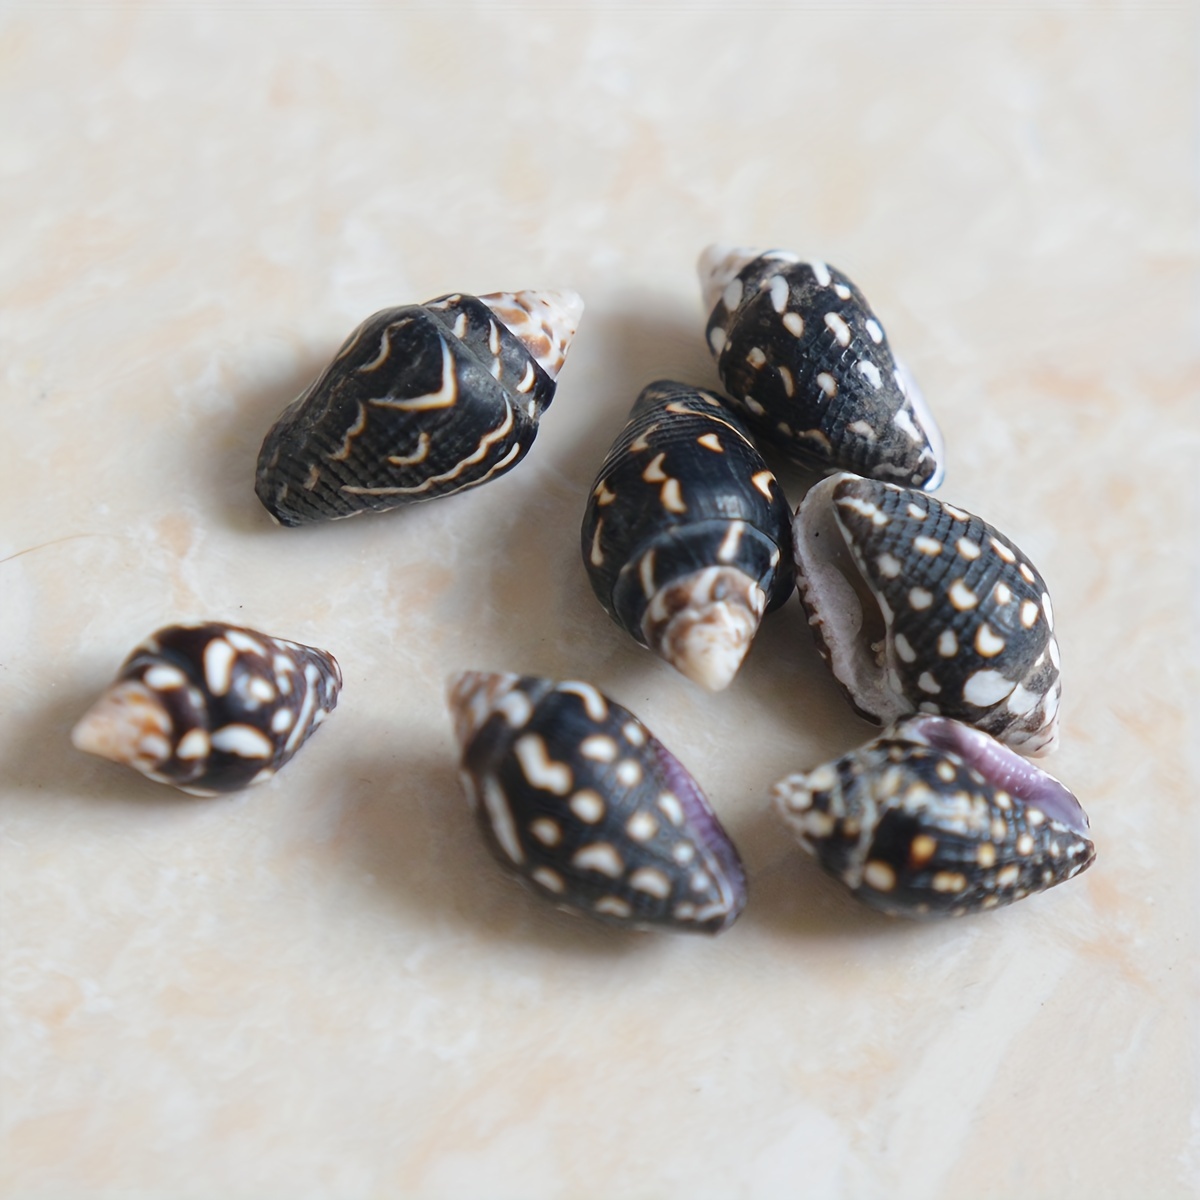 Natural Sea Shells Crafts, Sea Shells Decoration, Handicraft Materials